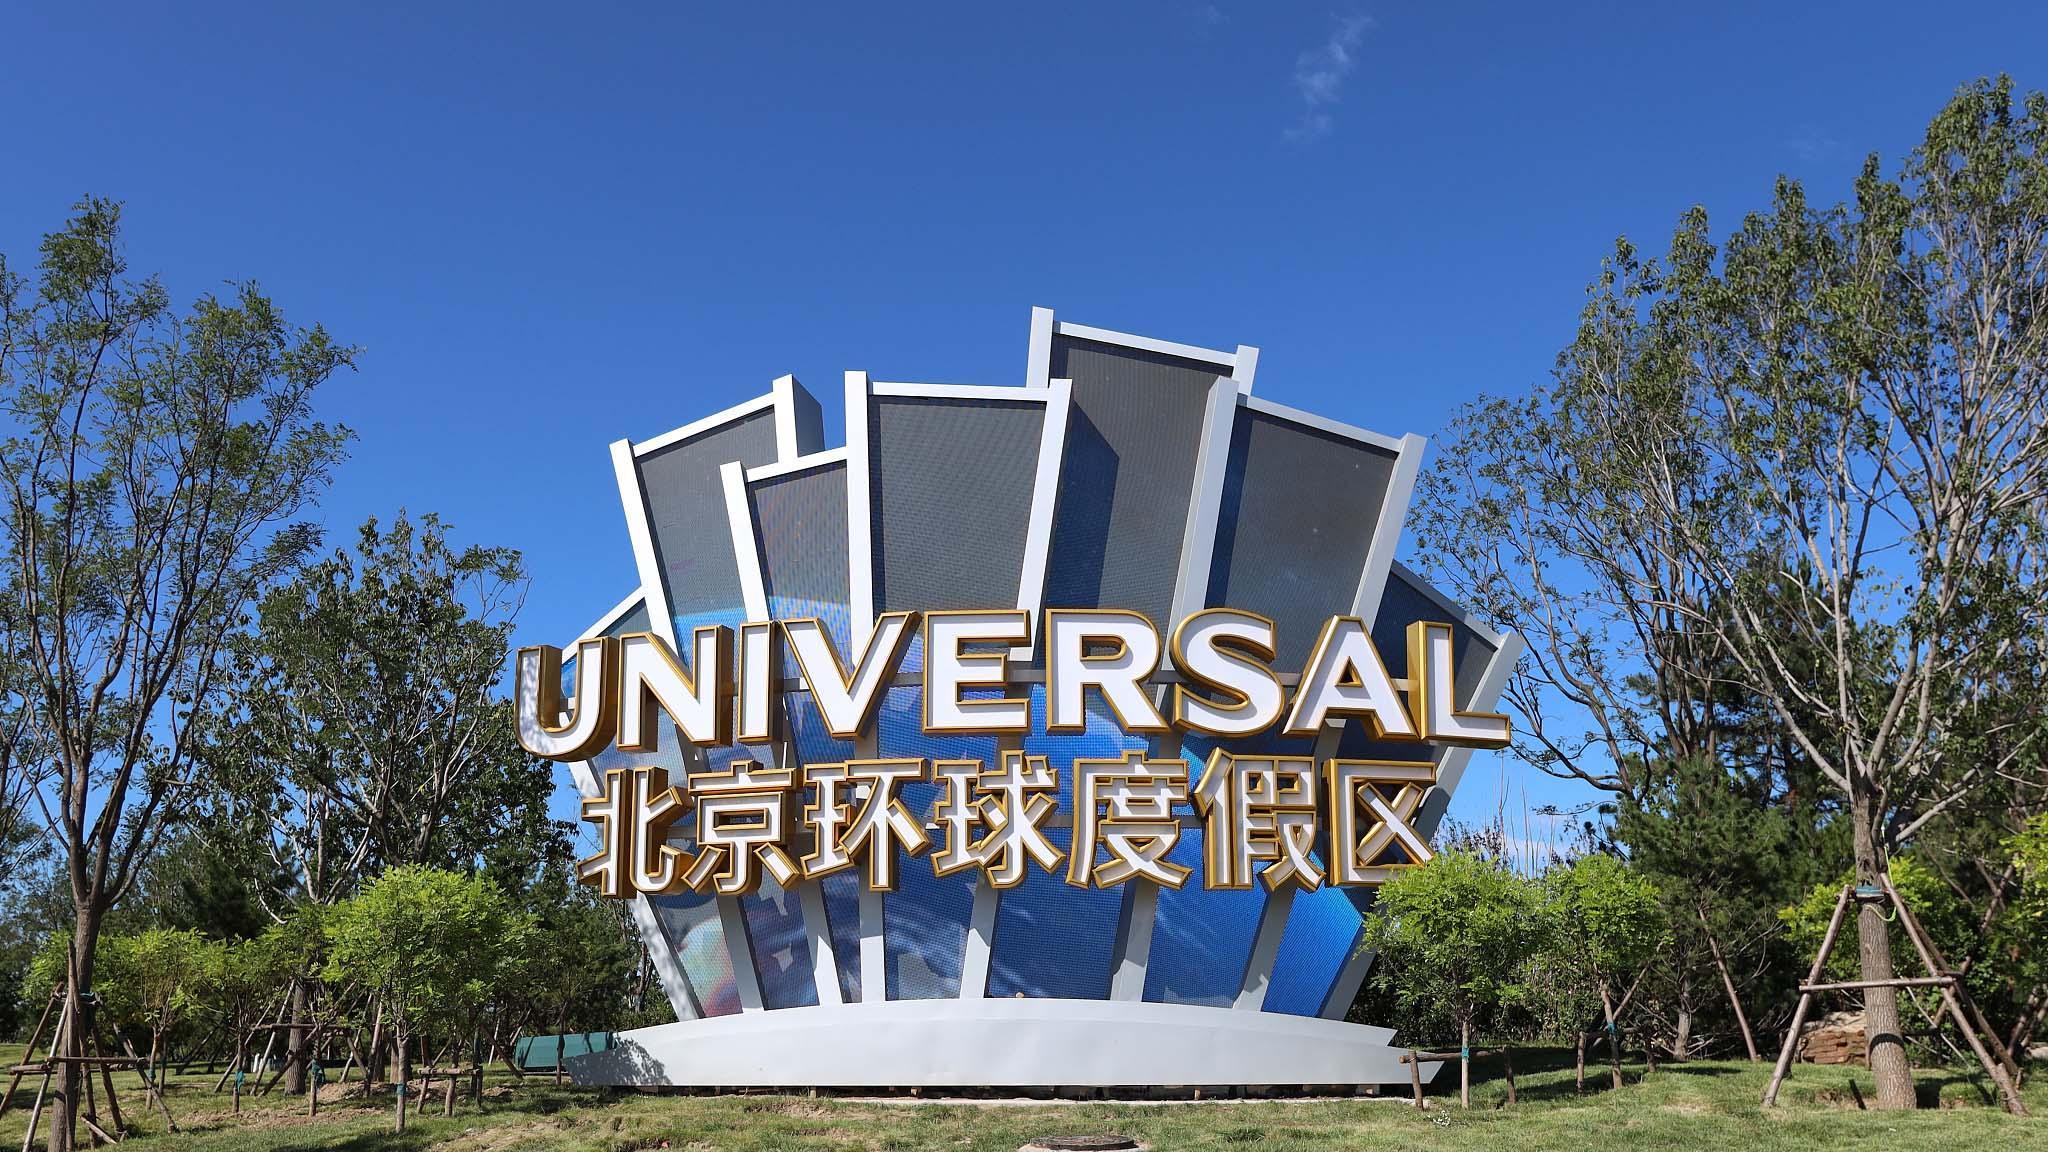 В Пекине, с 15 июня, после месячного перерыва, возобновит свою работу Universal Beijing Resort.